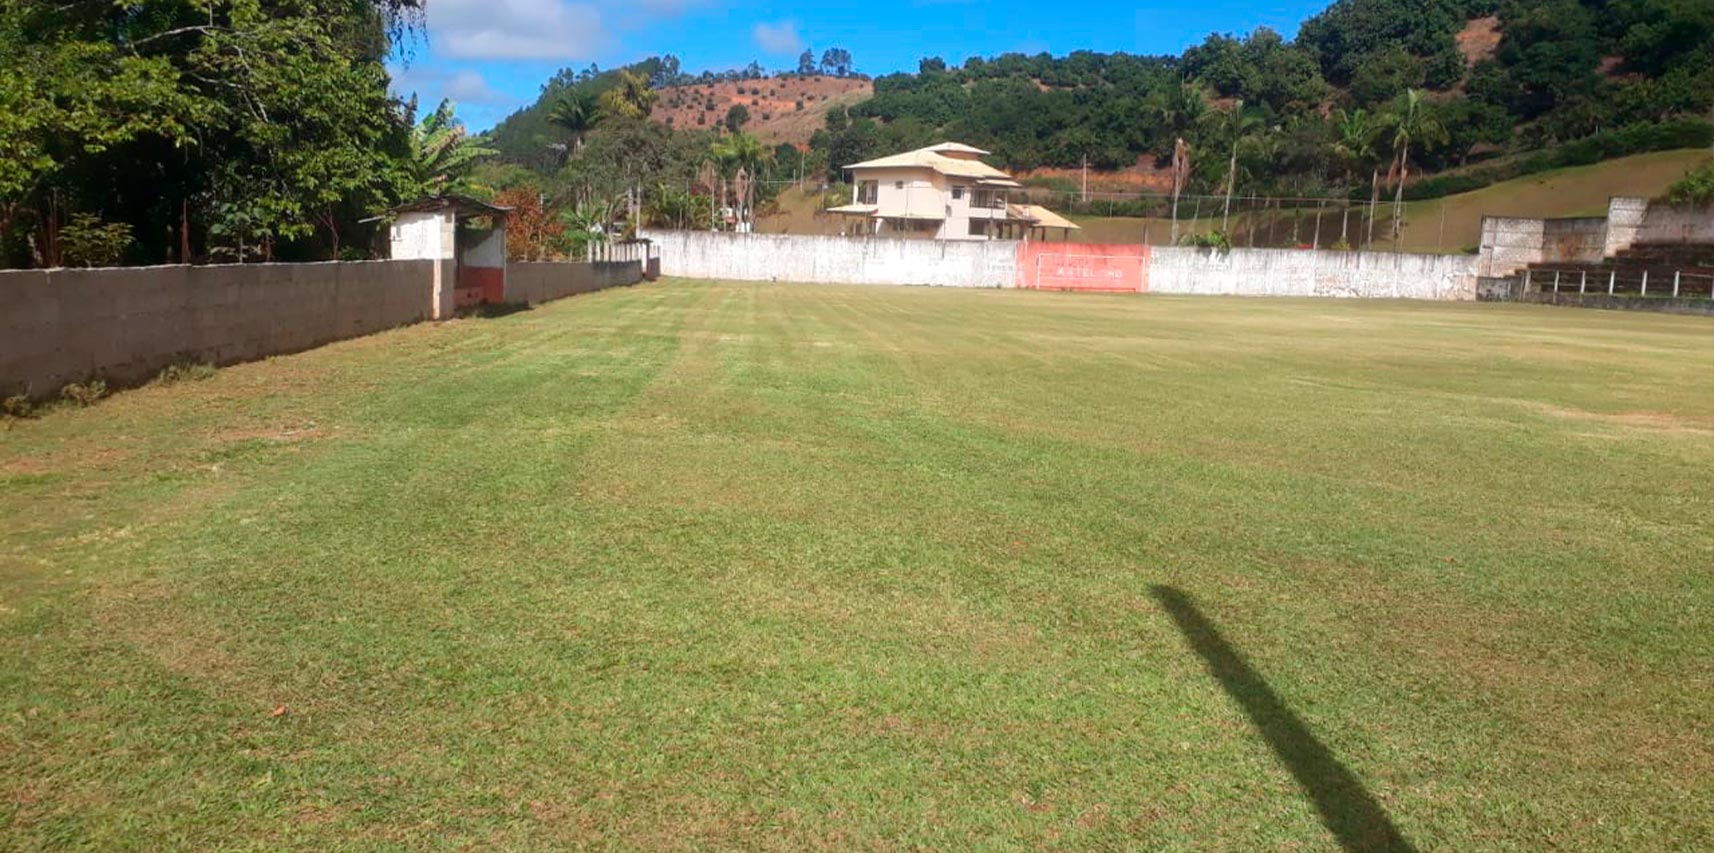 Secretaria de Cultura, Turismo e Esporte realiza serviço de roçagem em campos de futebol nas comunidades de Castelinho e Jacutinga